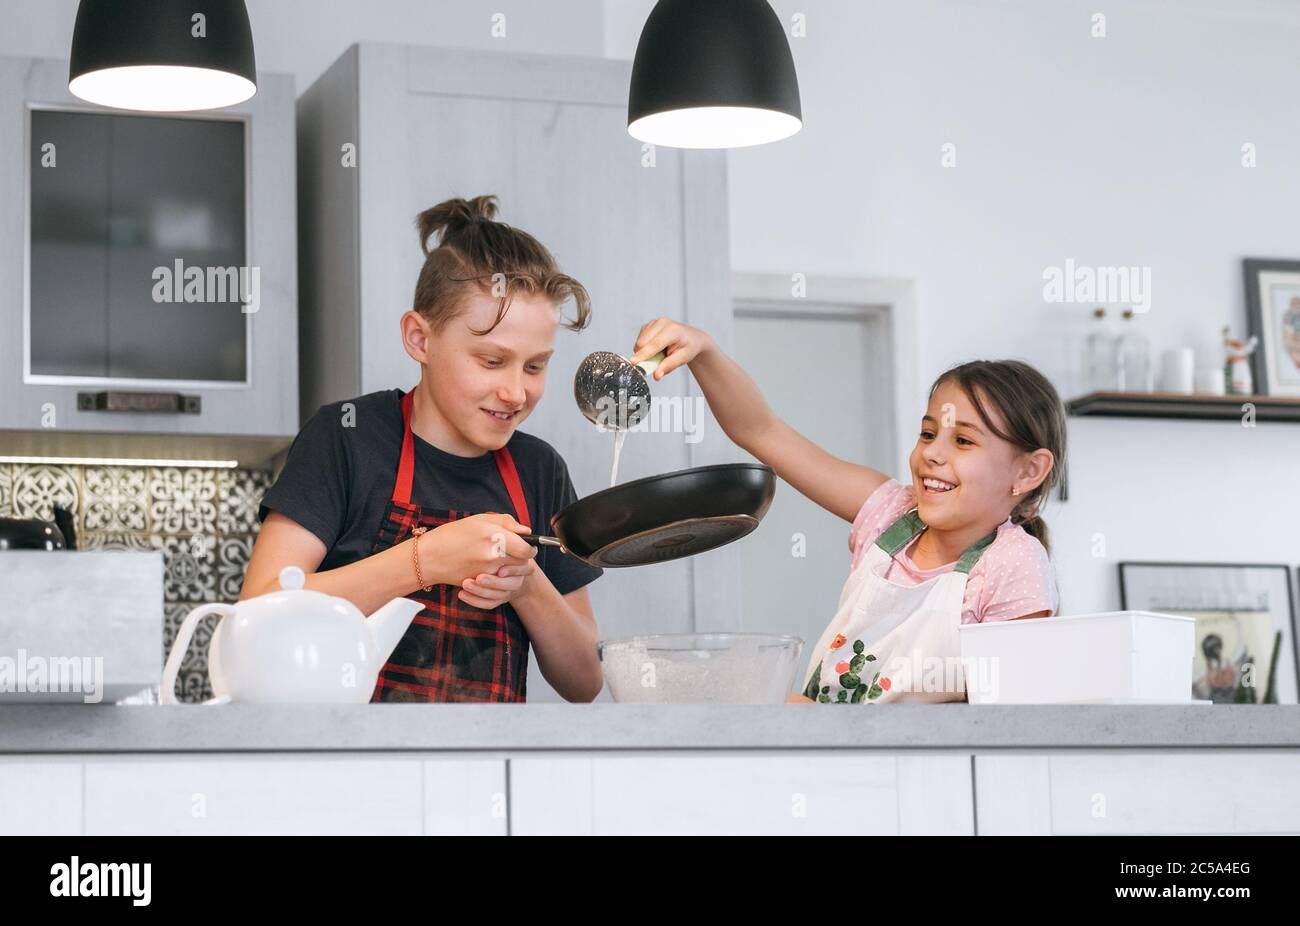 Image concept de cuisine maison pour enfants. Tabliers habillés par sœur et frère, faisant des crêpes maison dans la cuisine. Fille portant une pâte liquide sur le h Banque D'Images